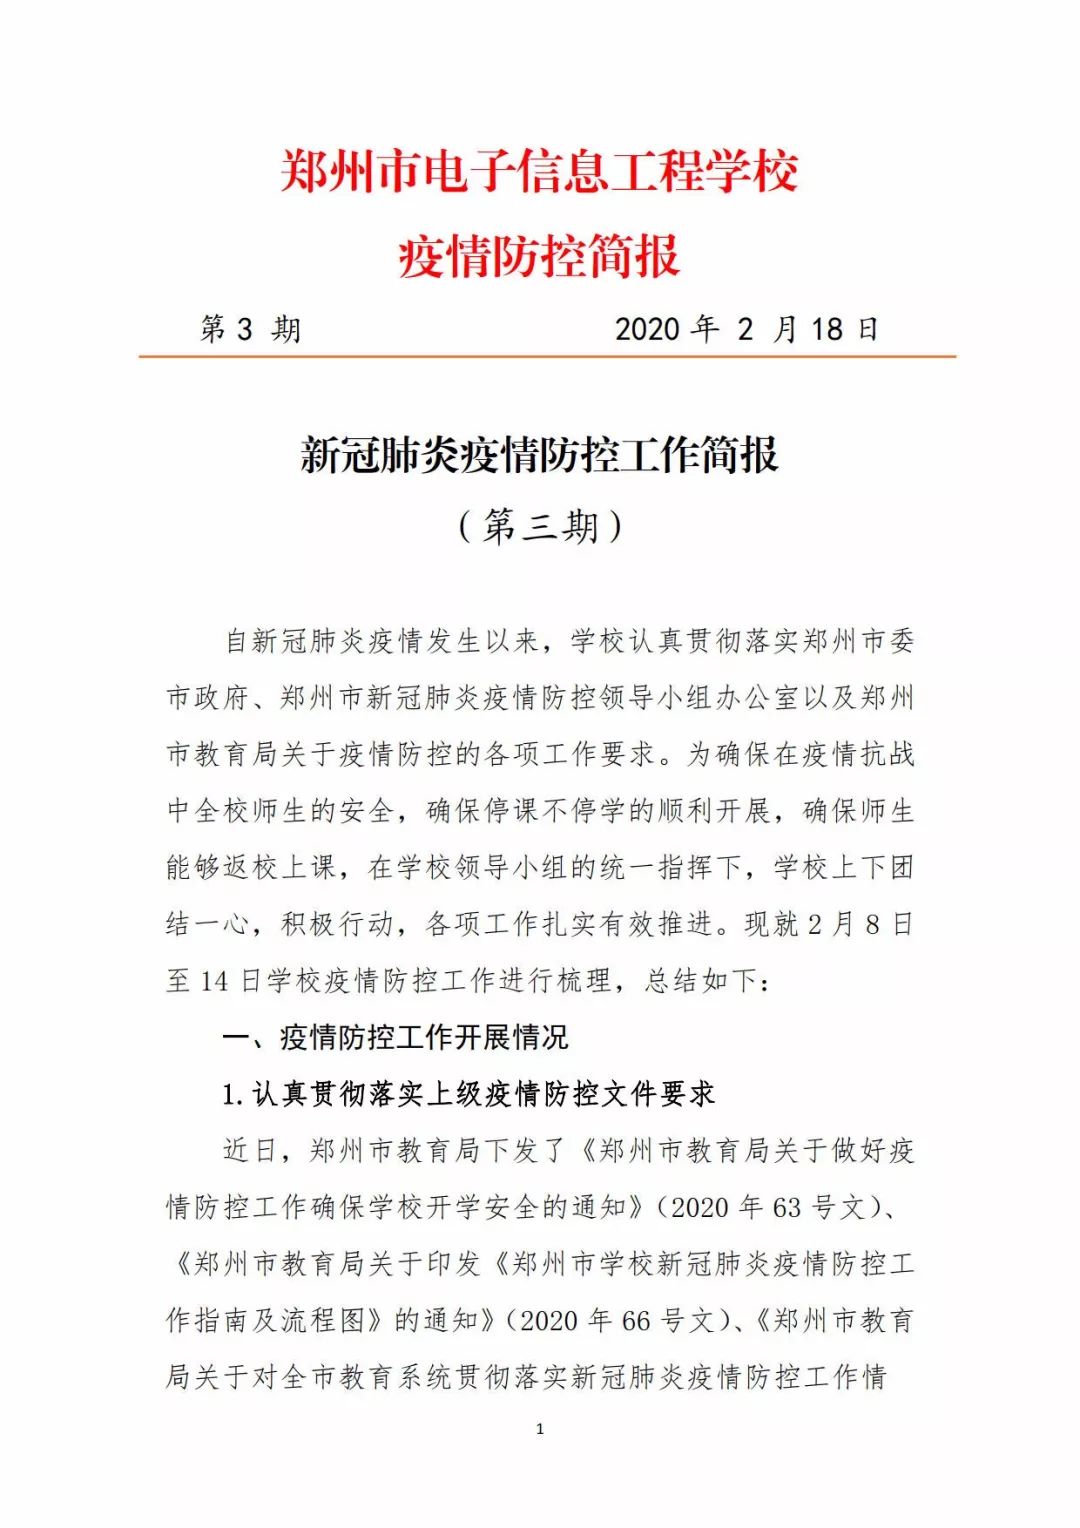 郑州市电子信工程学校疫情防控简报(第三期)